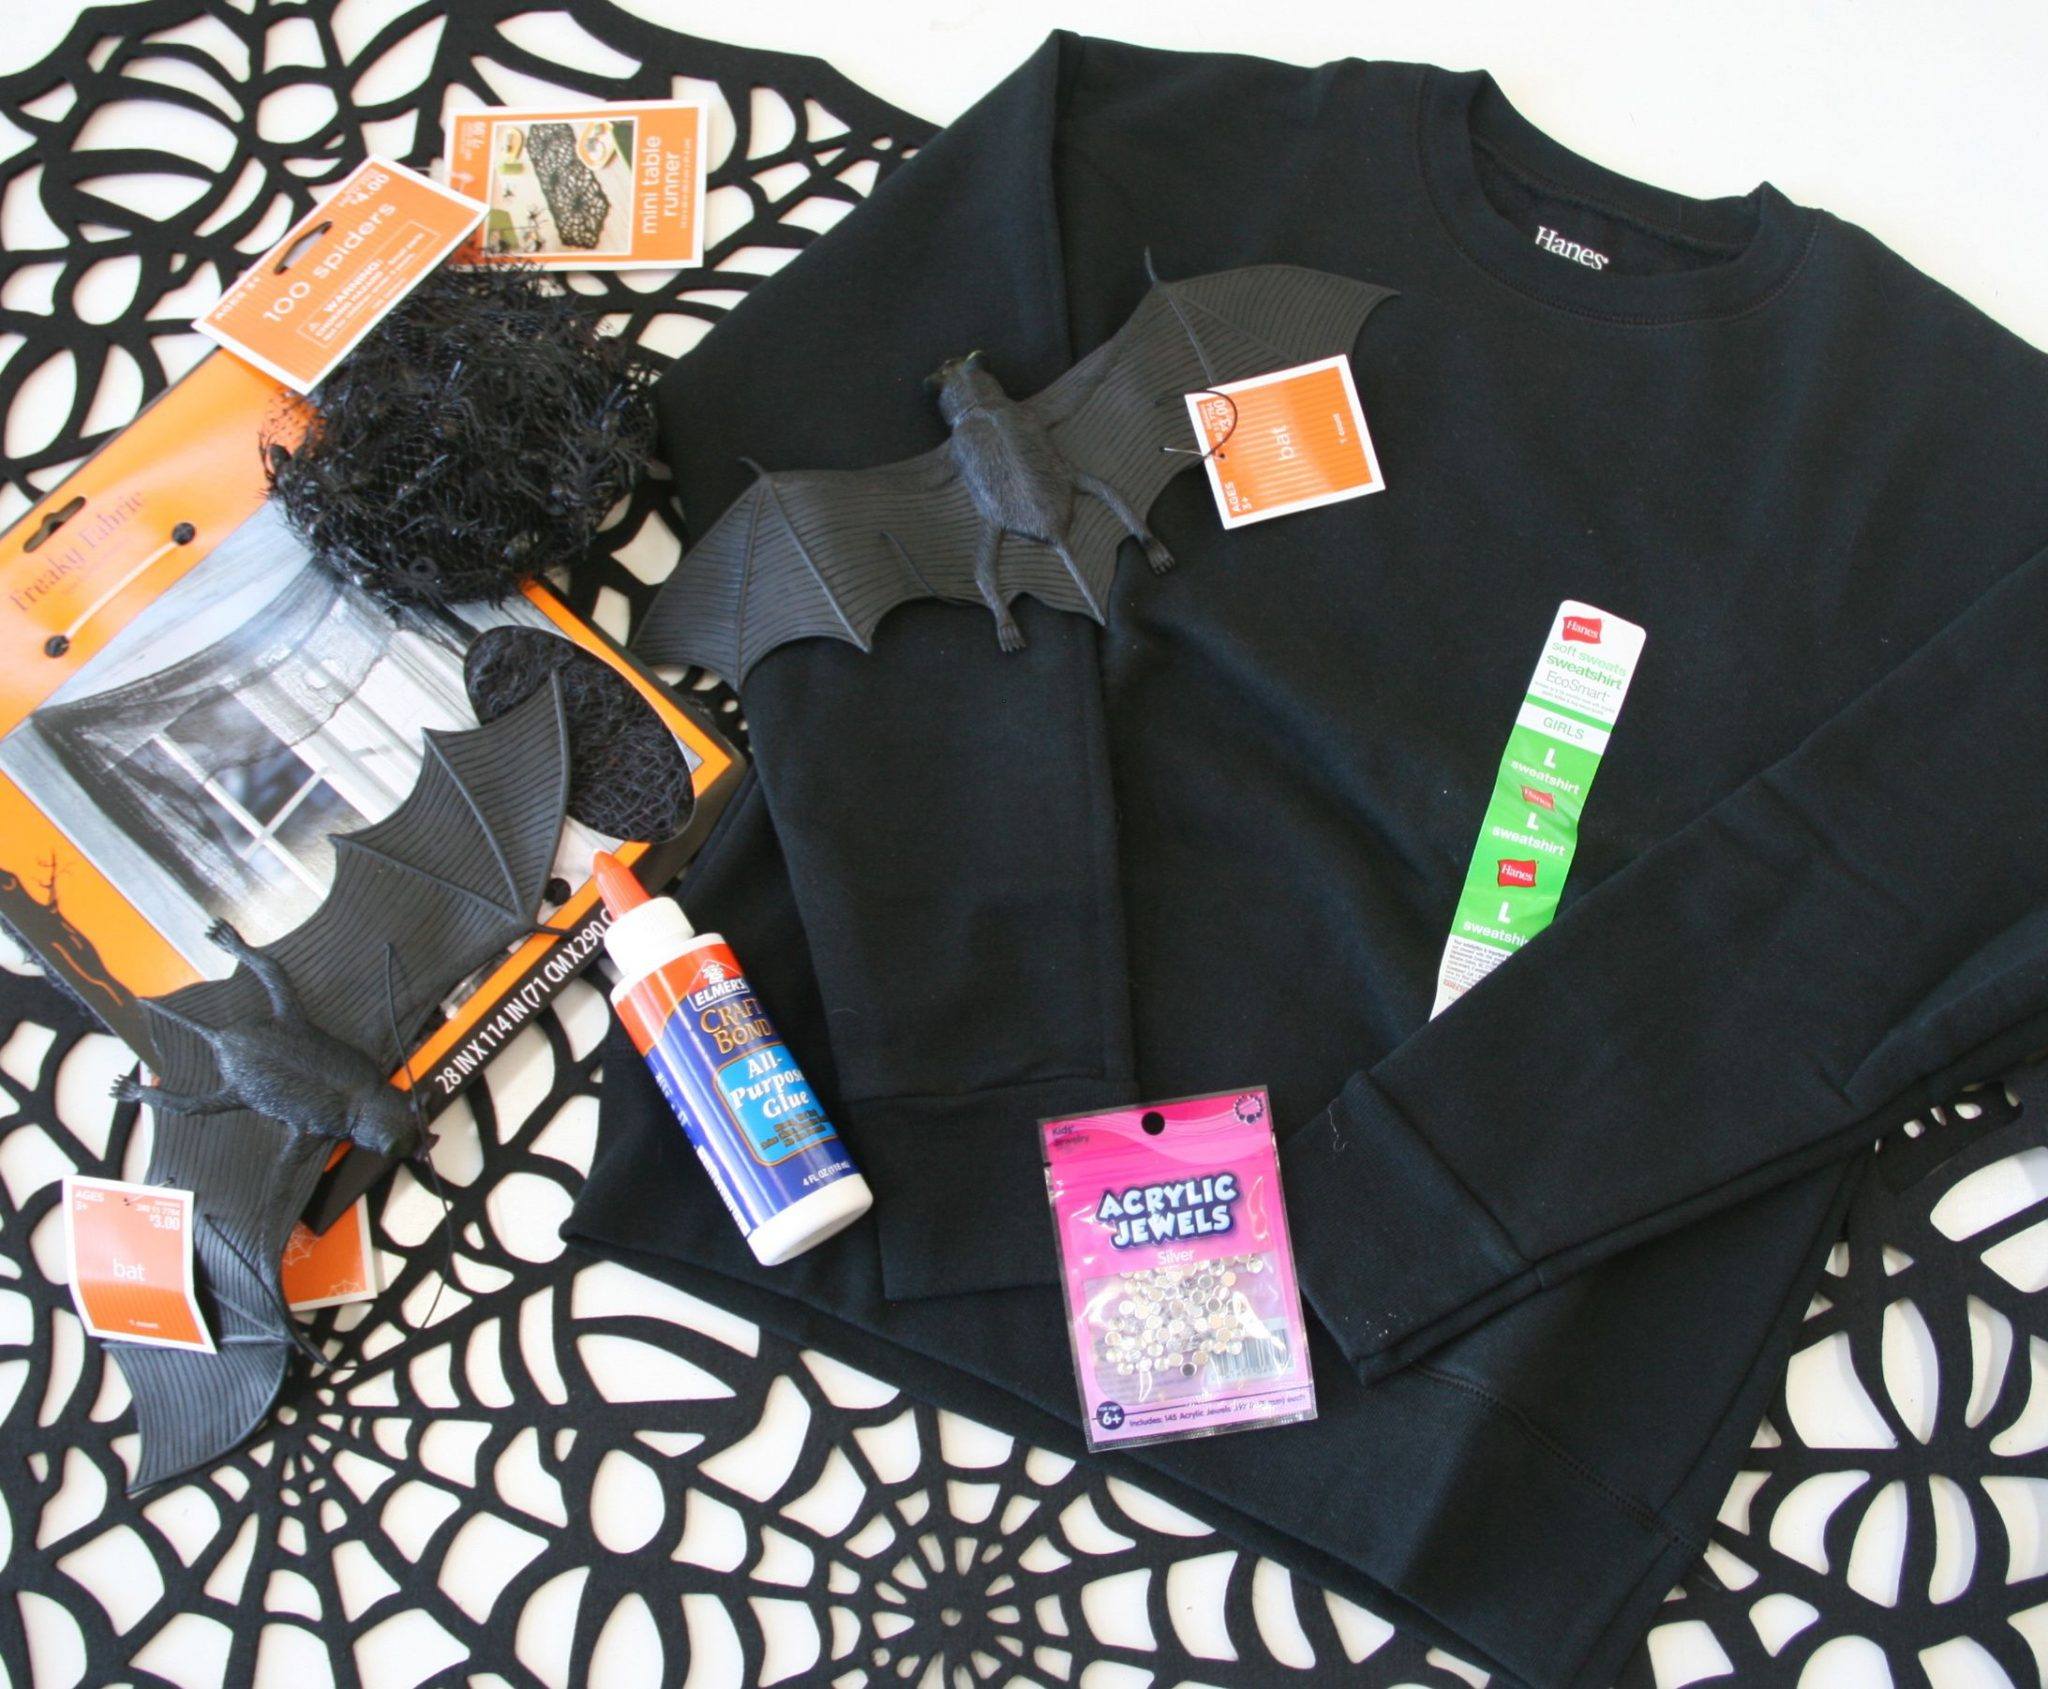 DIY halloween costume supplies, target, walmart, hanes